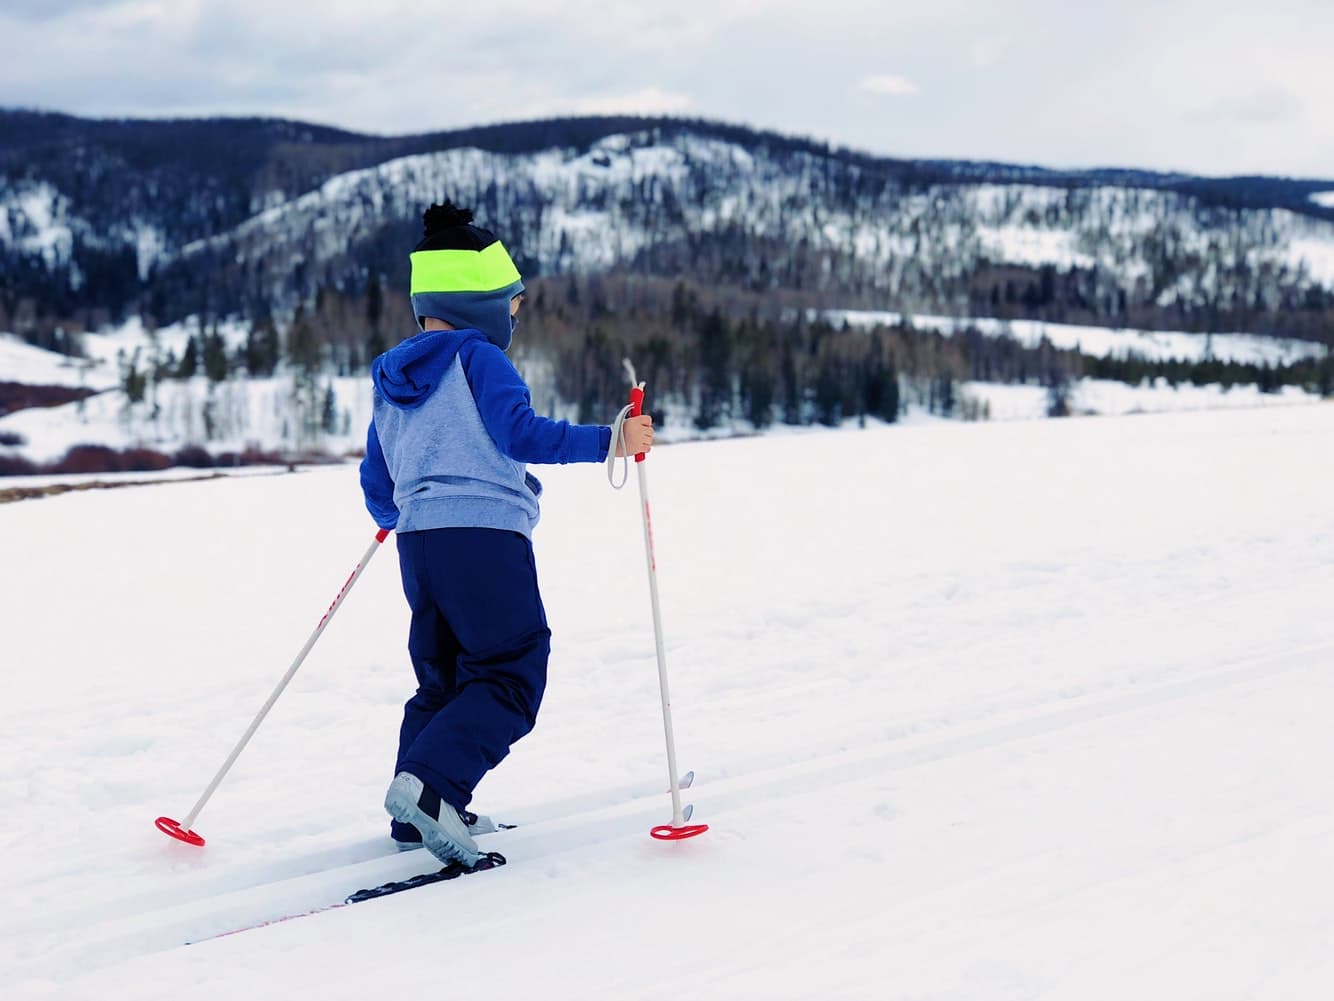 Young child using ski equipment